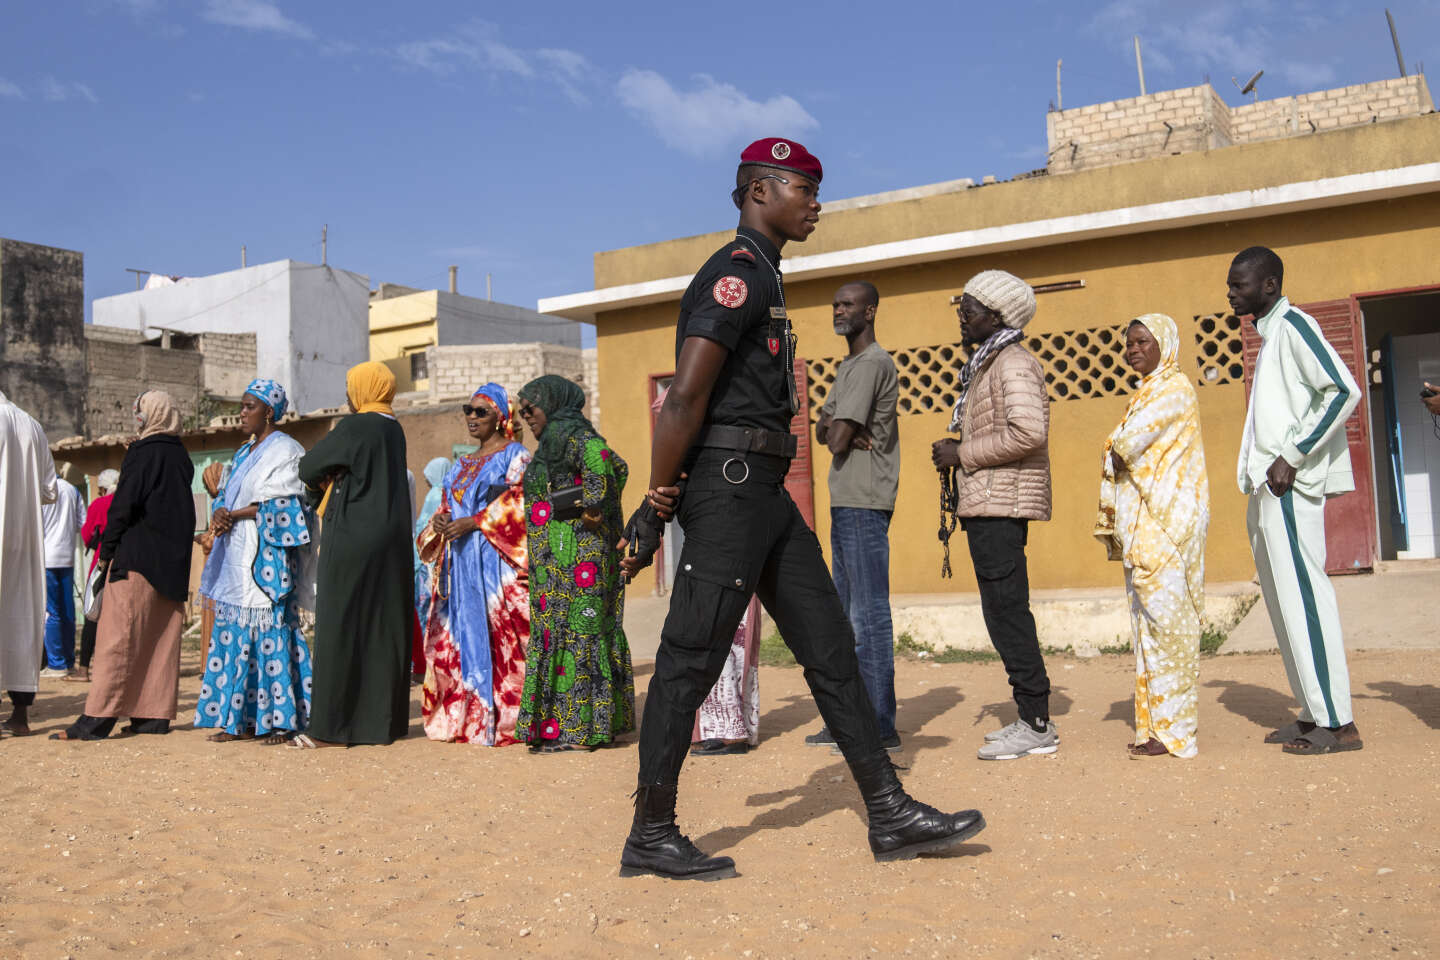 Senegalese stemming na weken van onzekerheid